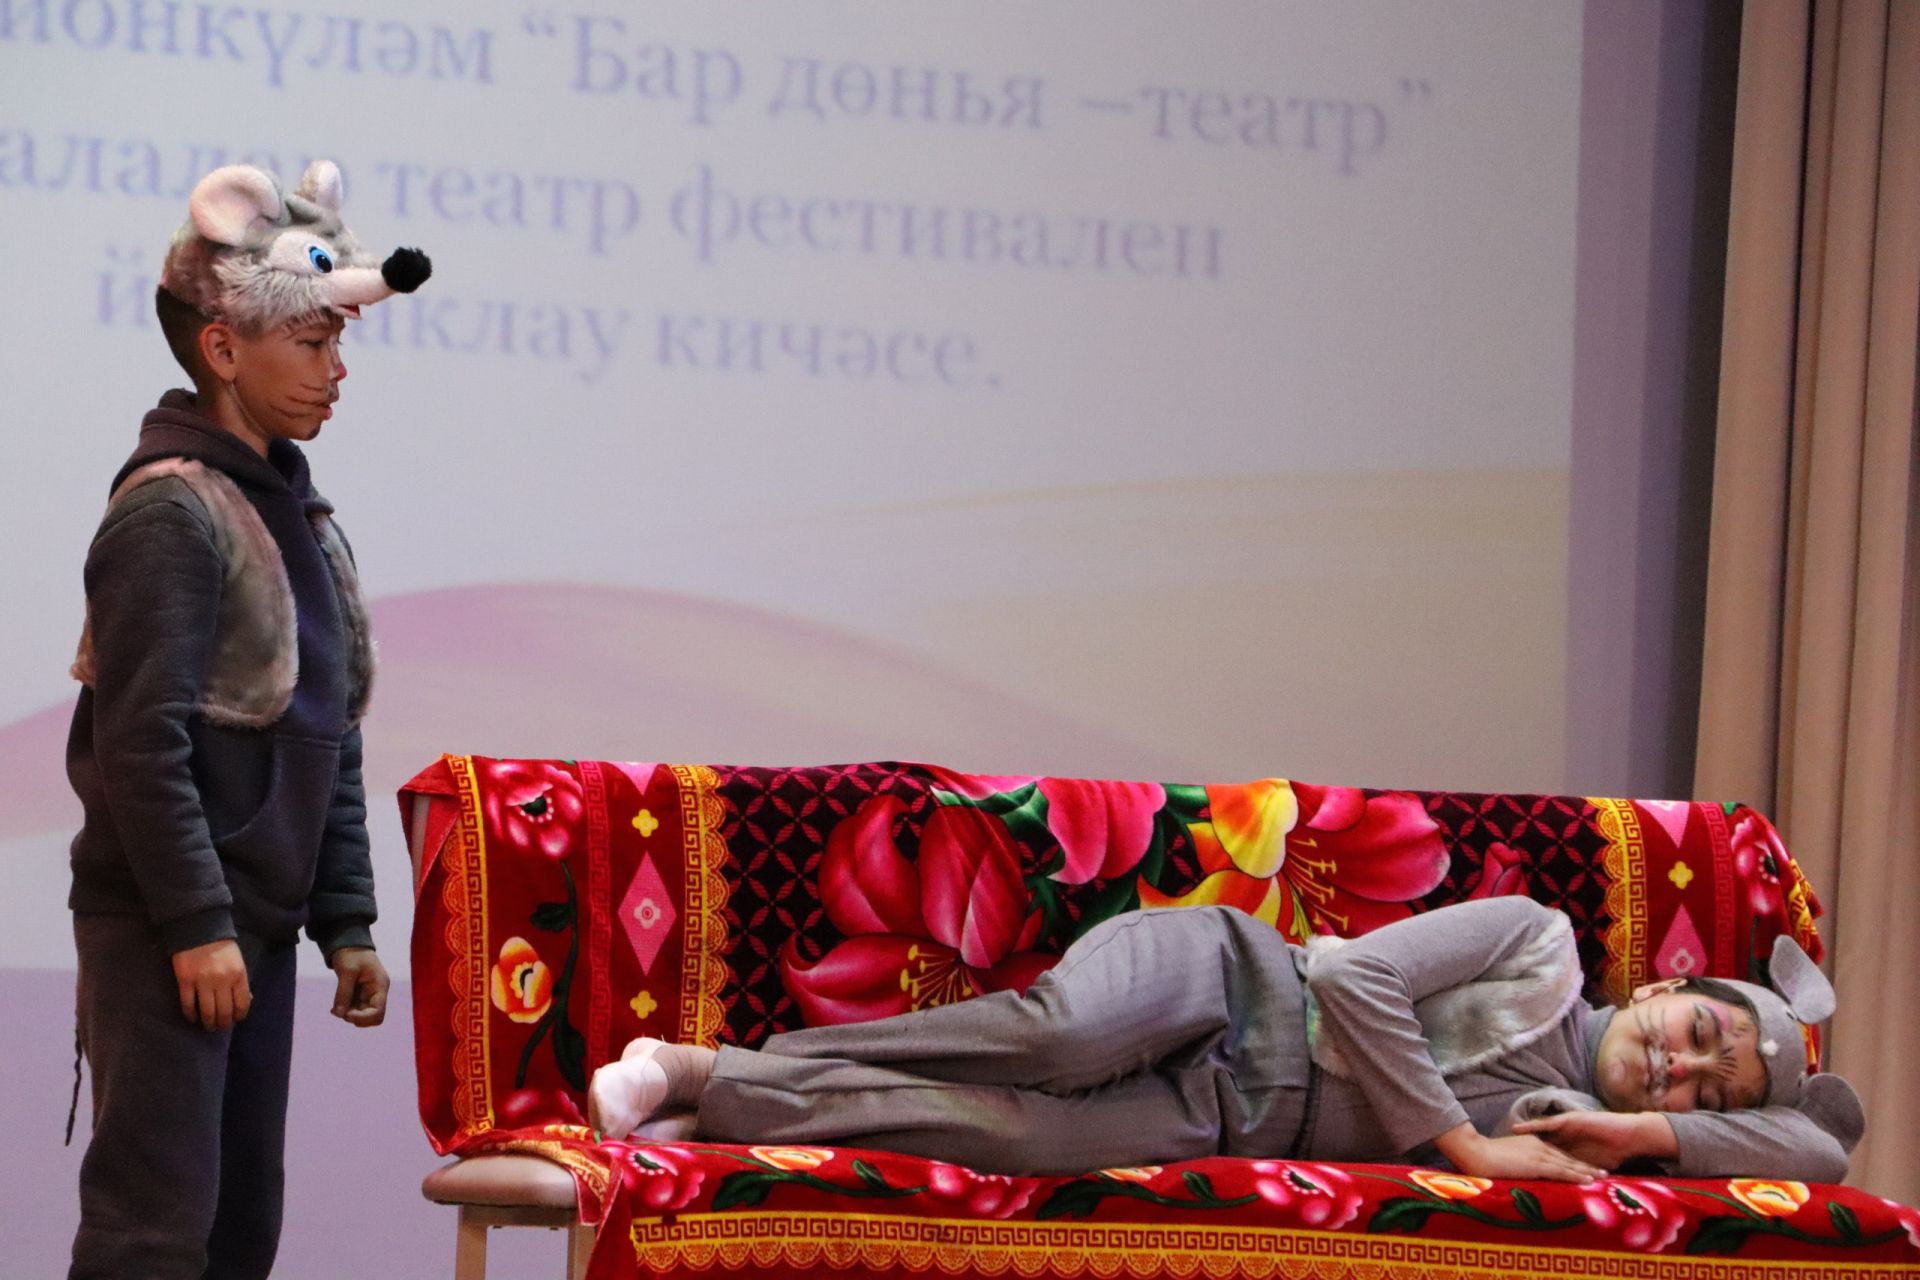 Апаста Әмир Камалиев исемендәге “Бар дөнья - театр” фестиваленә йомгак ясалды